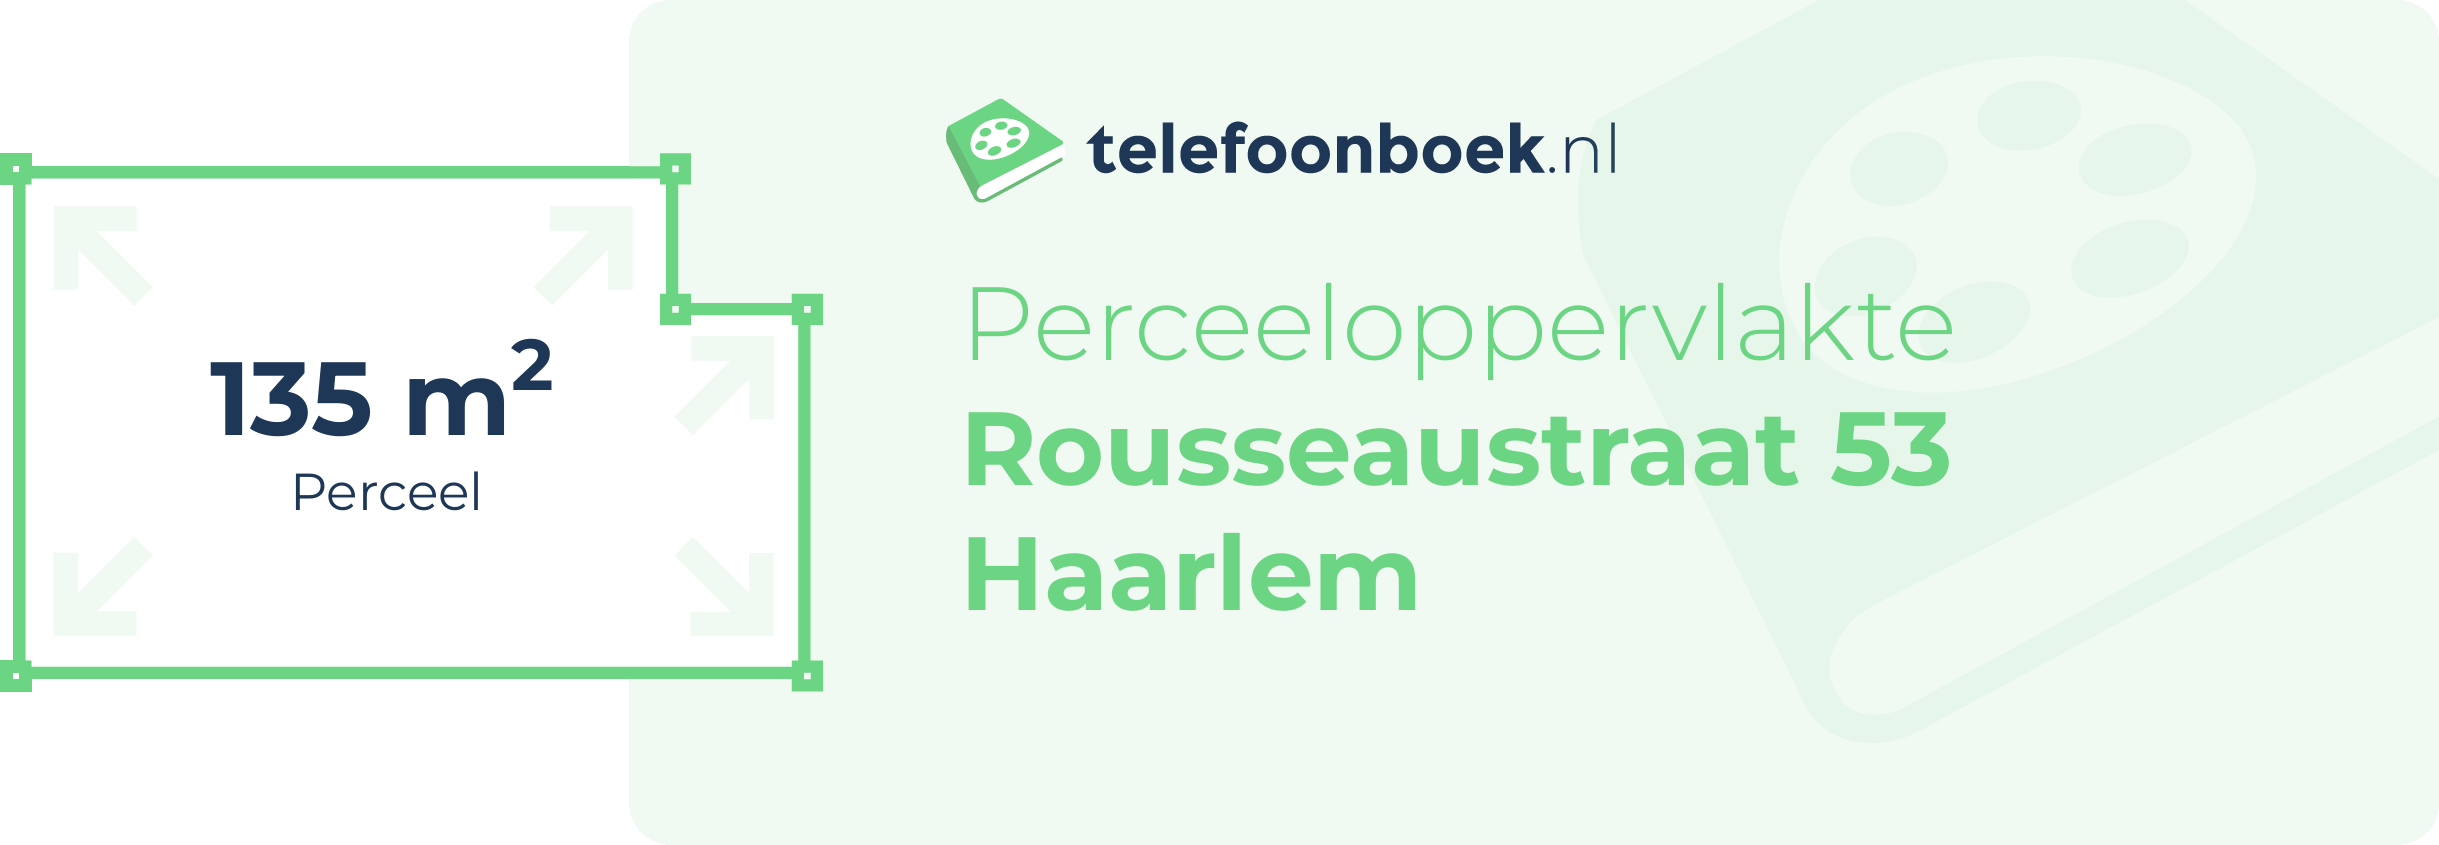 Perceeloppervlakte Rousseaustraat 53 Haarlem